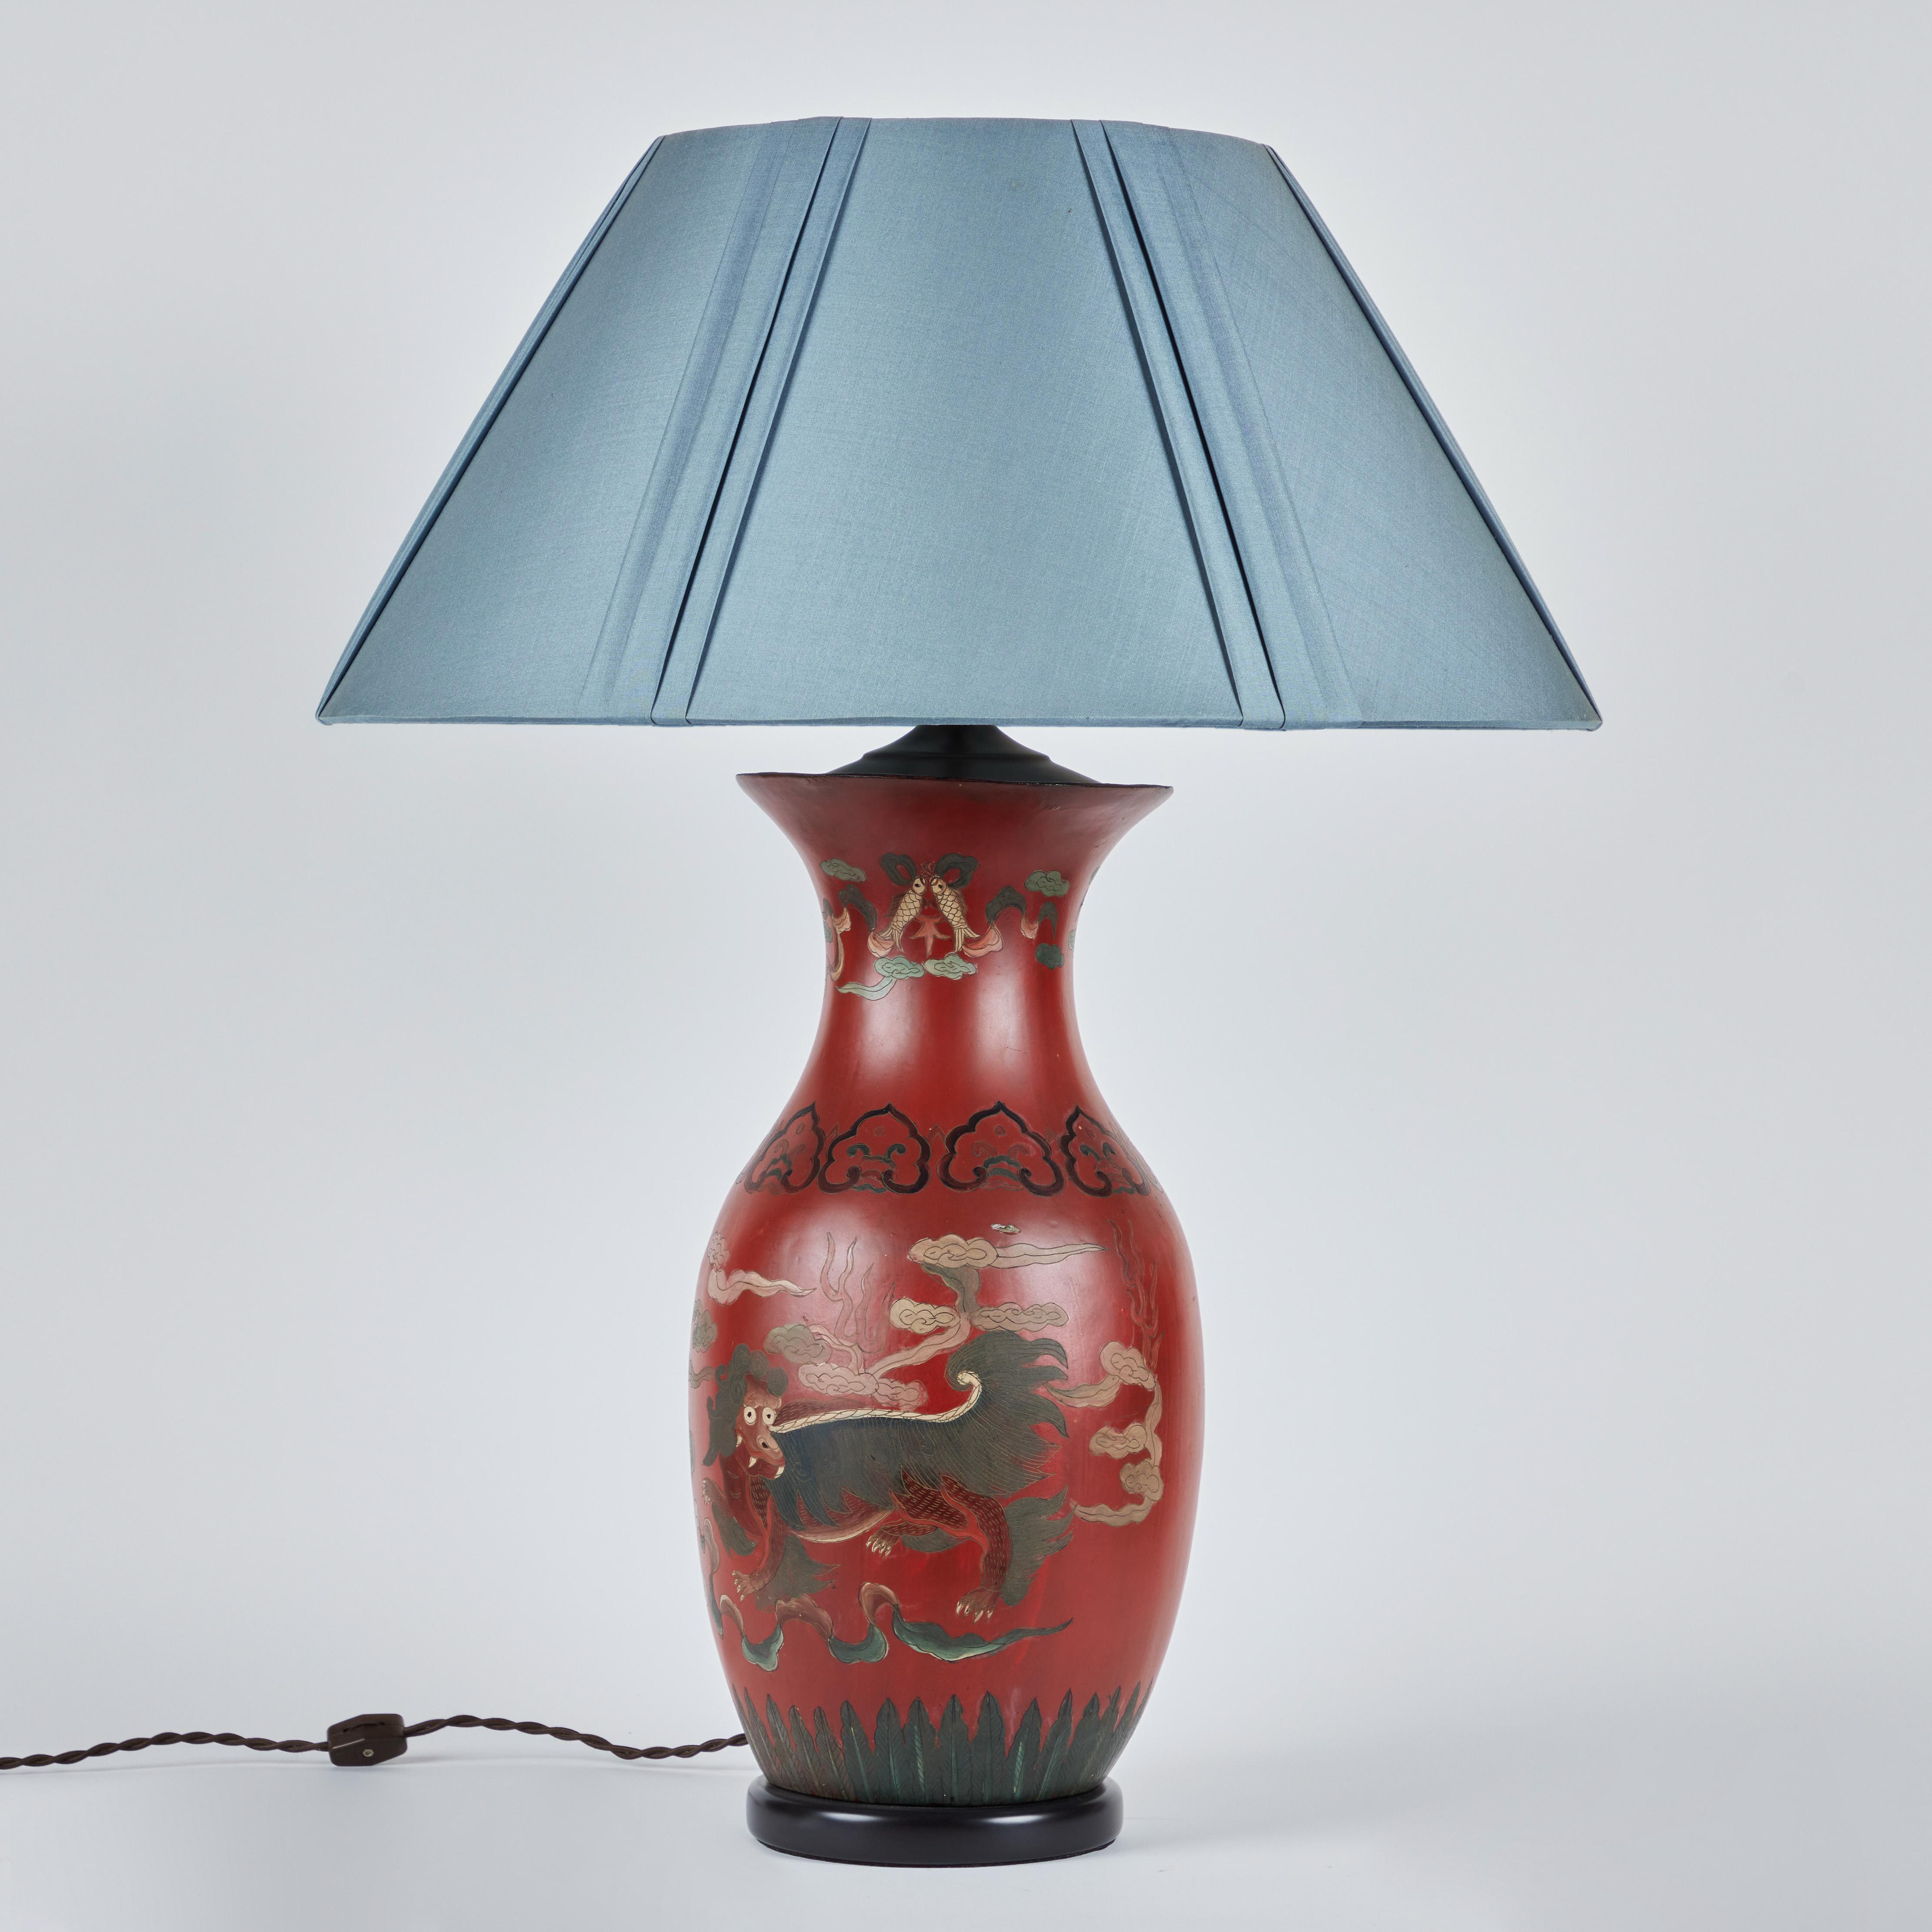 Une paire de lampes chinoises en papier mâché peintes à la main sur des bases en bois ébonisé.   Les dragons stylisés et les poissons koi sont les éléments décoratifs vedettes.  Les nouveaux abat-jour en soie personnalisés ont un diamètre de 21